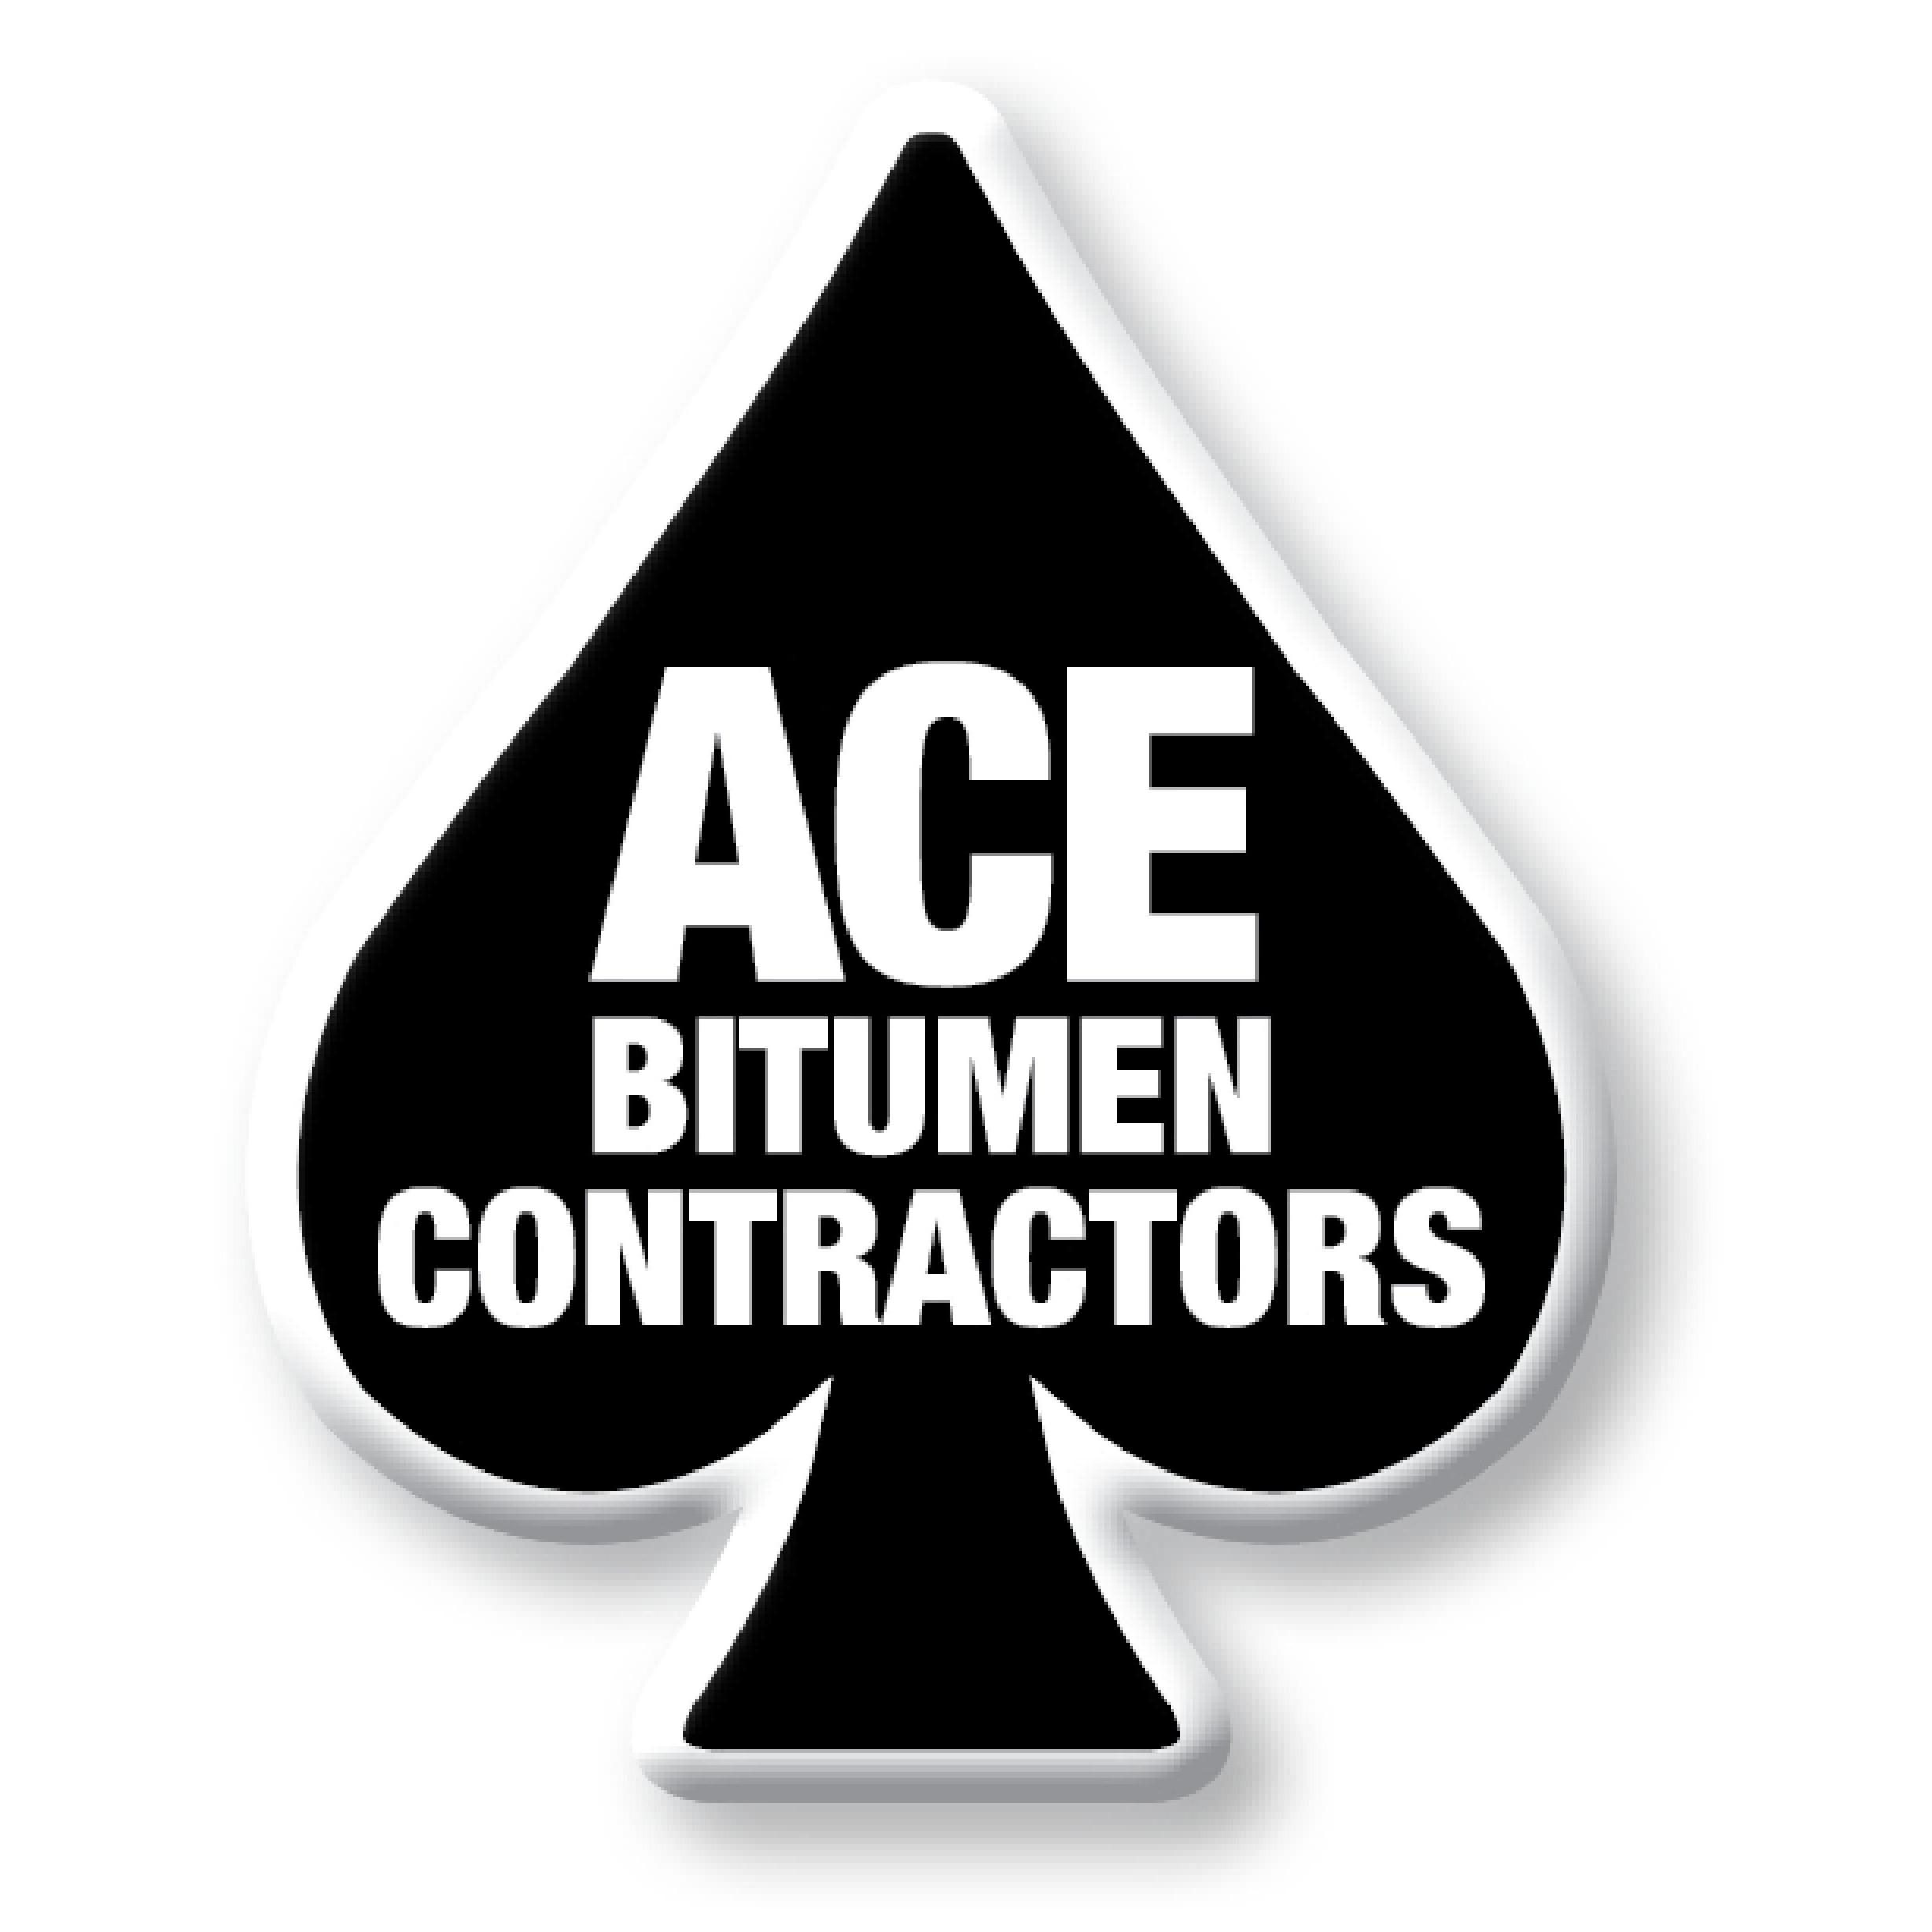 Ace Bitumen Contractors Pty Ltd - Cavan, SA 5094 - (08) 8349 8088 | ShowMeLocal.com